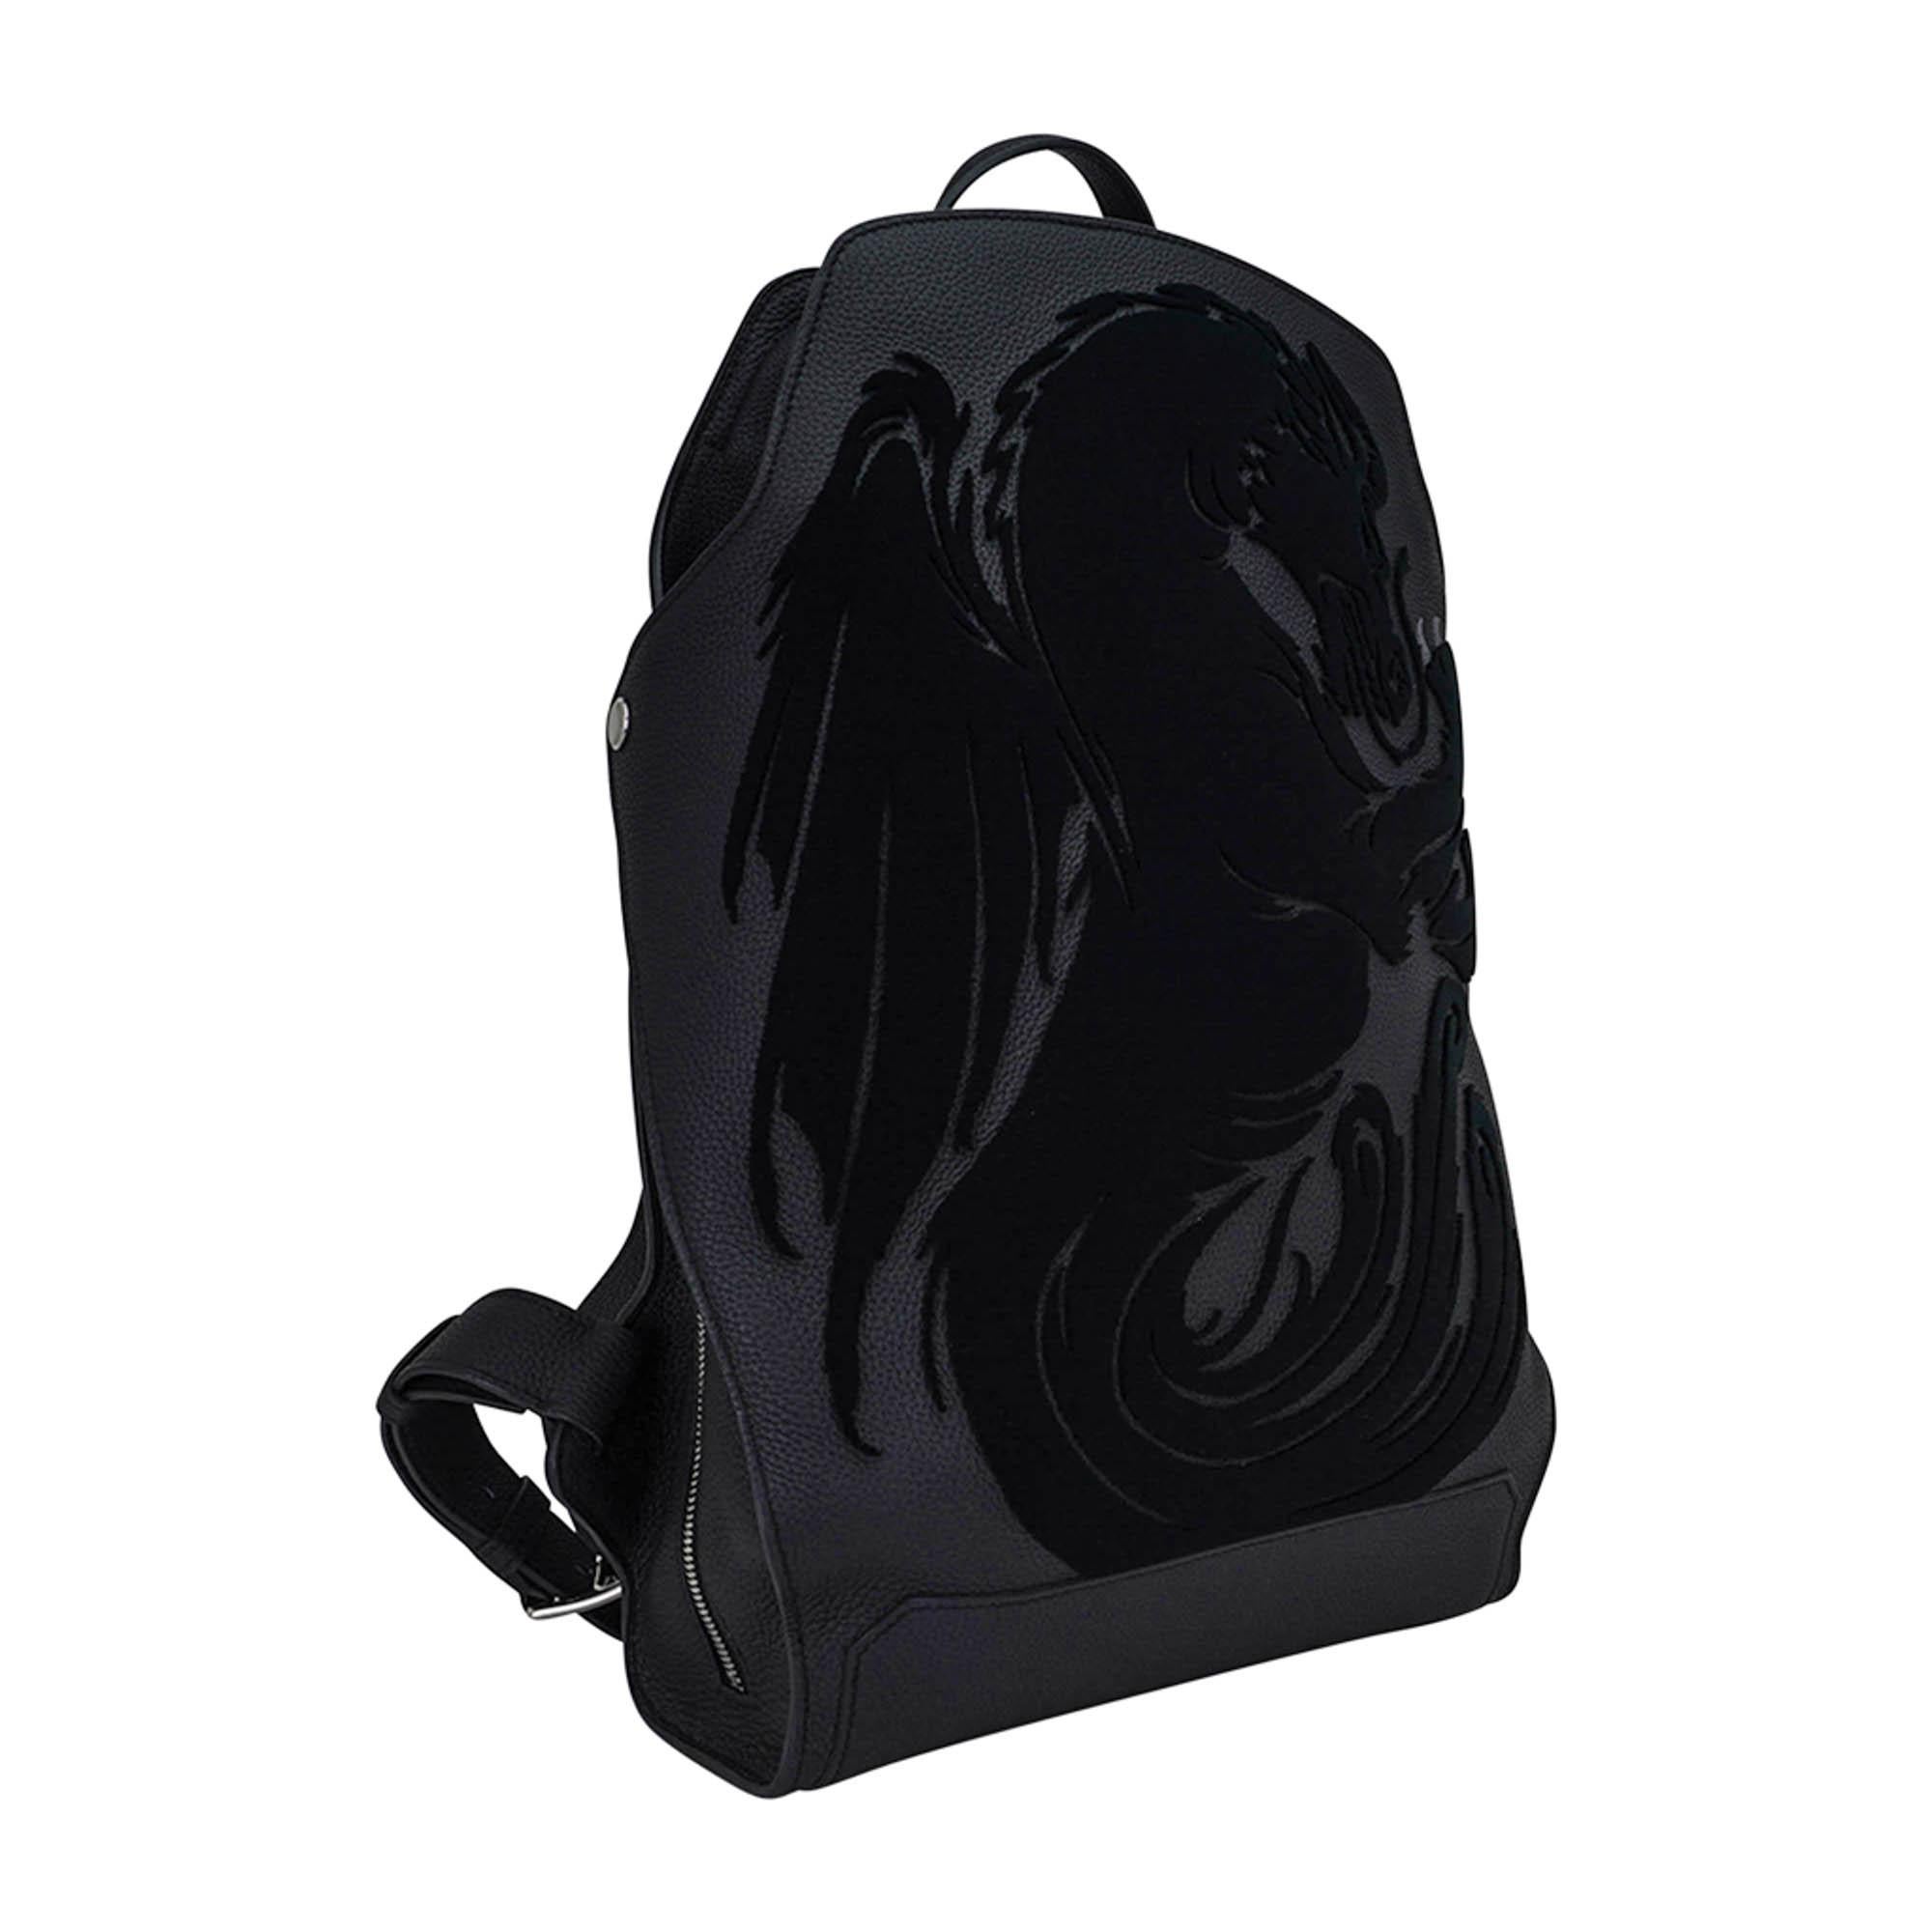 Hermes Chimeres Cityback 27 Rucksack in limitierter Auflage aus schwarzem Togoleder.
Auf der Rückseite befindet sich ein wunderschön gearbeiteter Drache aus der griechischen Mythologie, eine Chimäre.
Die Kreatur wird direkt auf das Leder gestickt